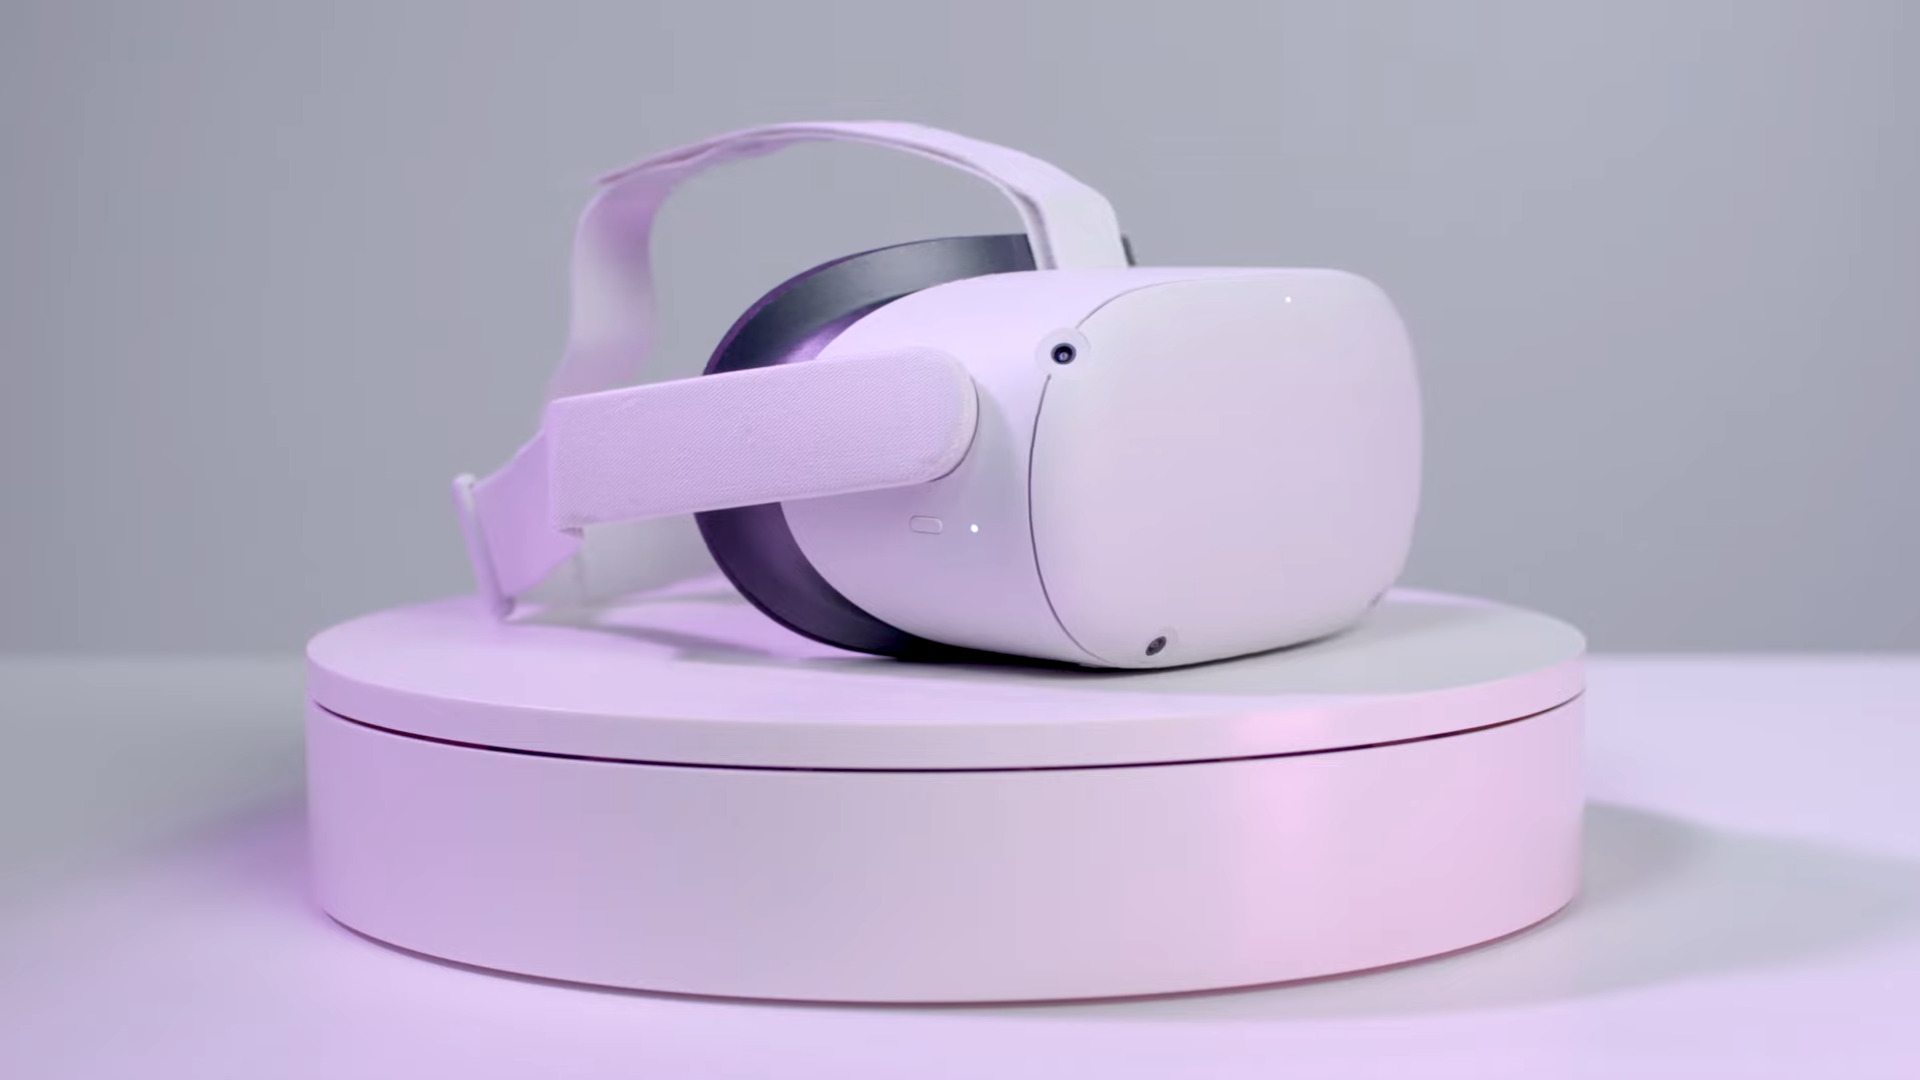 Headset oculus 2 headset ing ndhuwur plinth putih, adus ing warna ungu